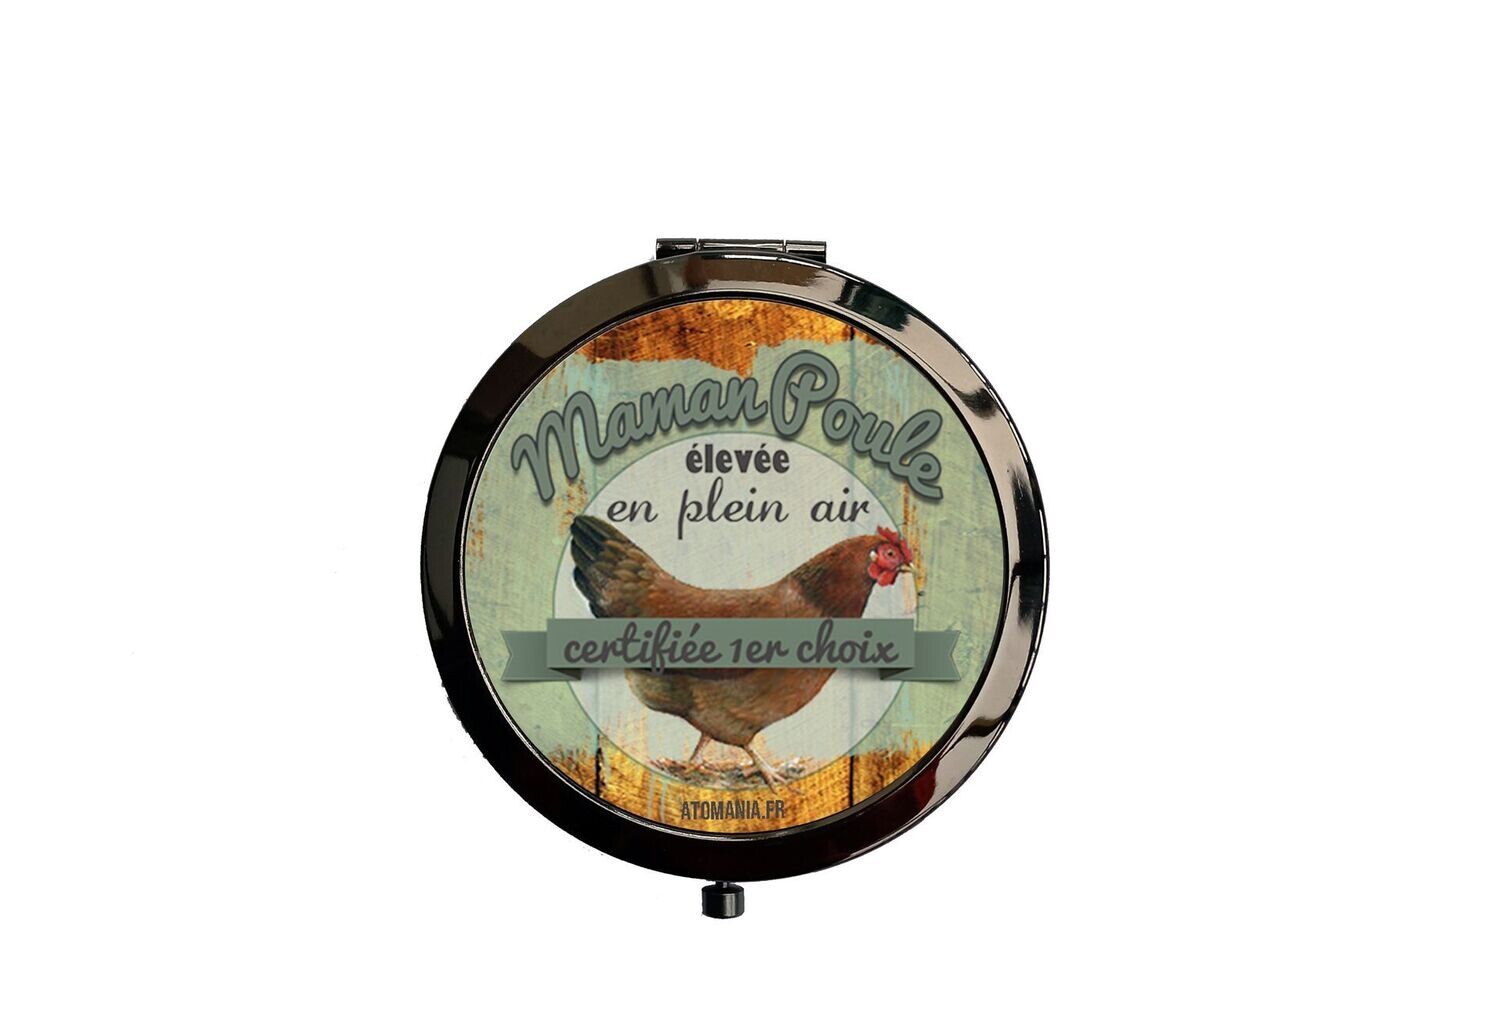 Miroir de poche maman poule certifiée 1er choix, design humoristique, dimensions 7cm, fabrication artisanale française